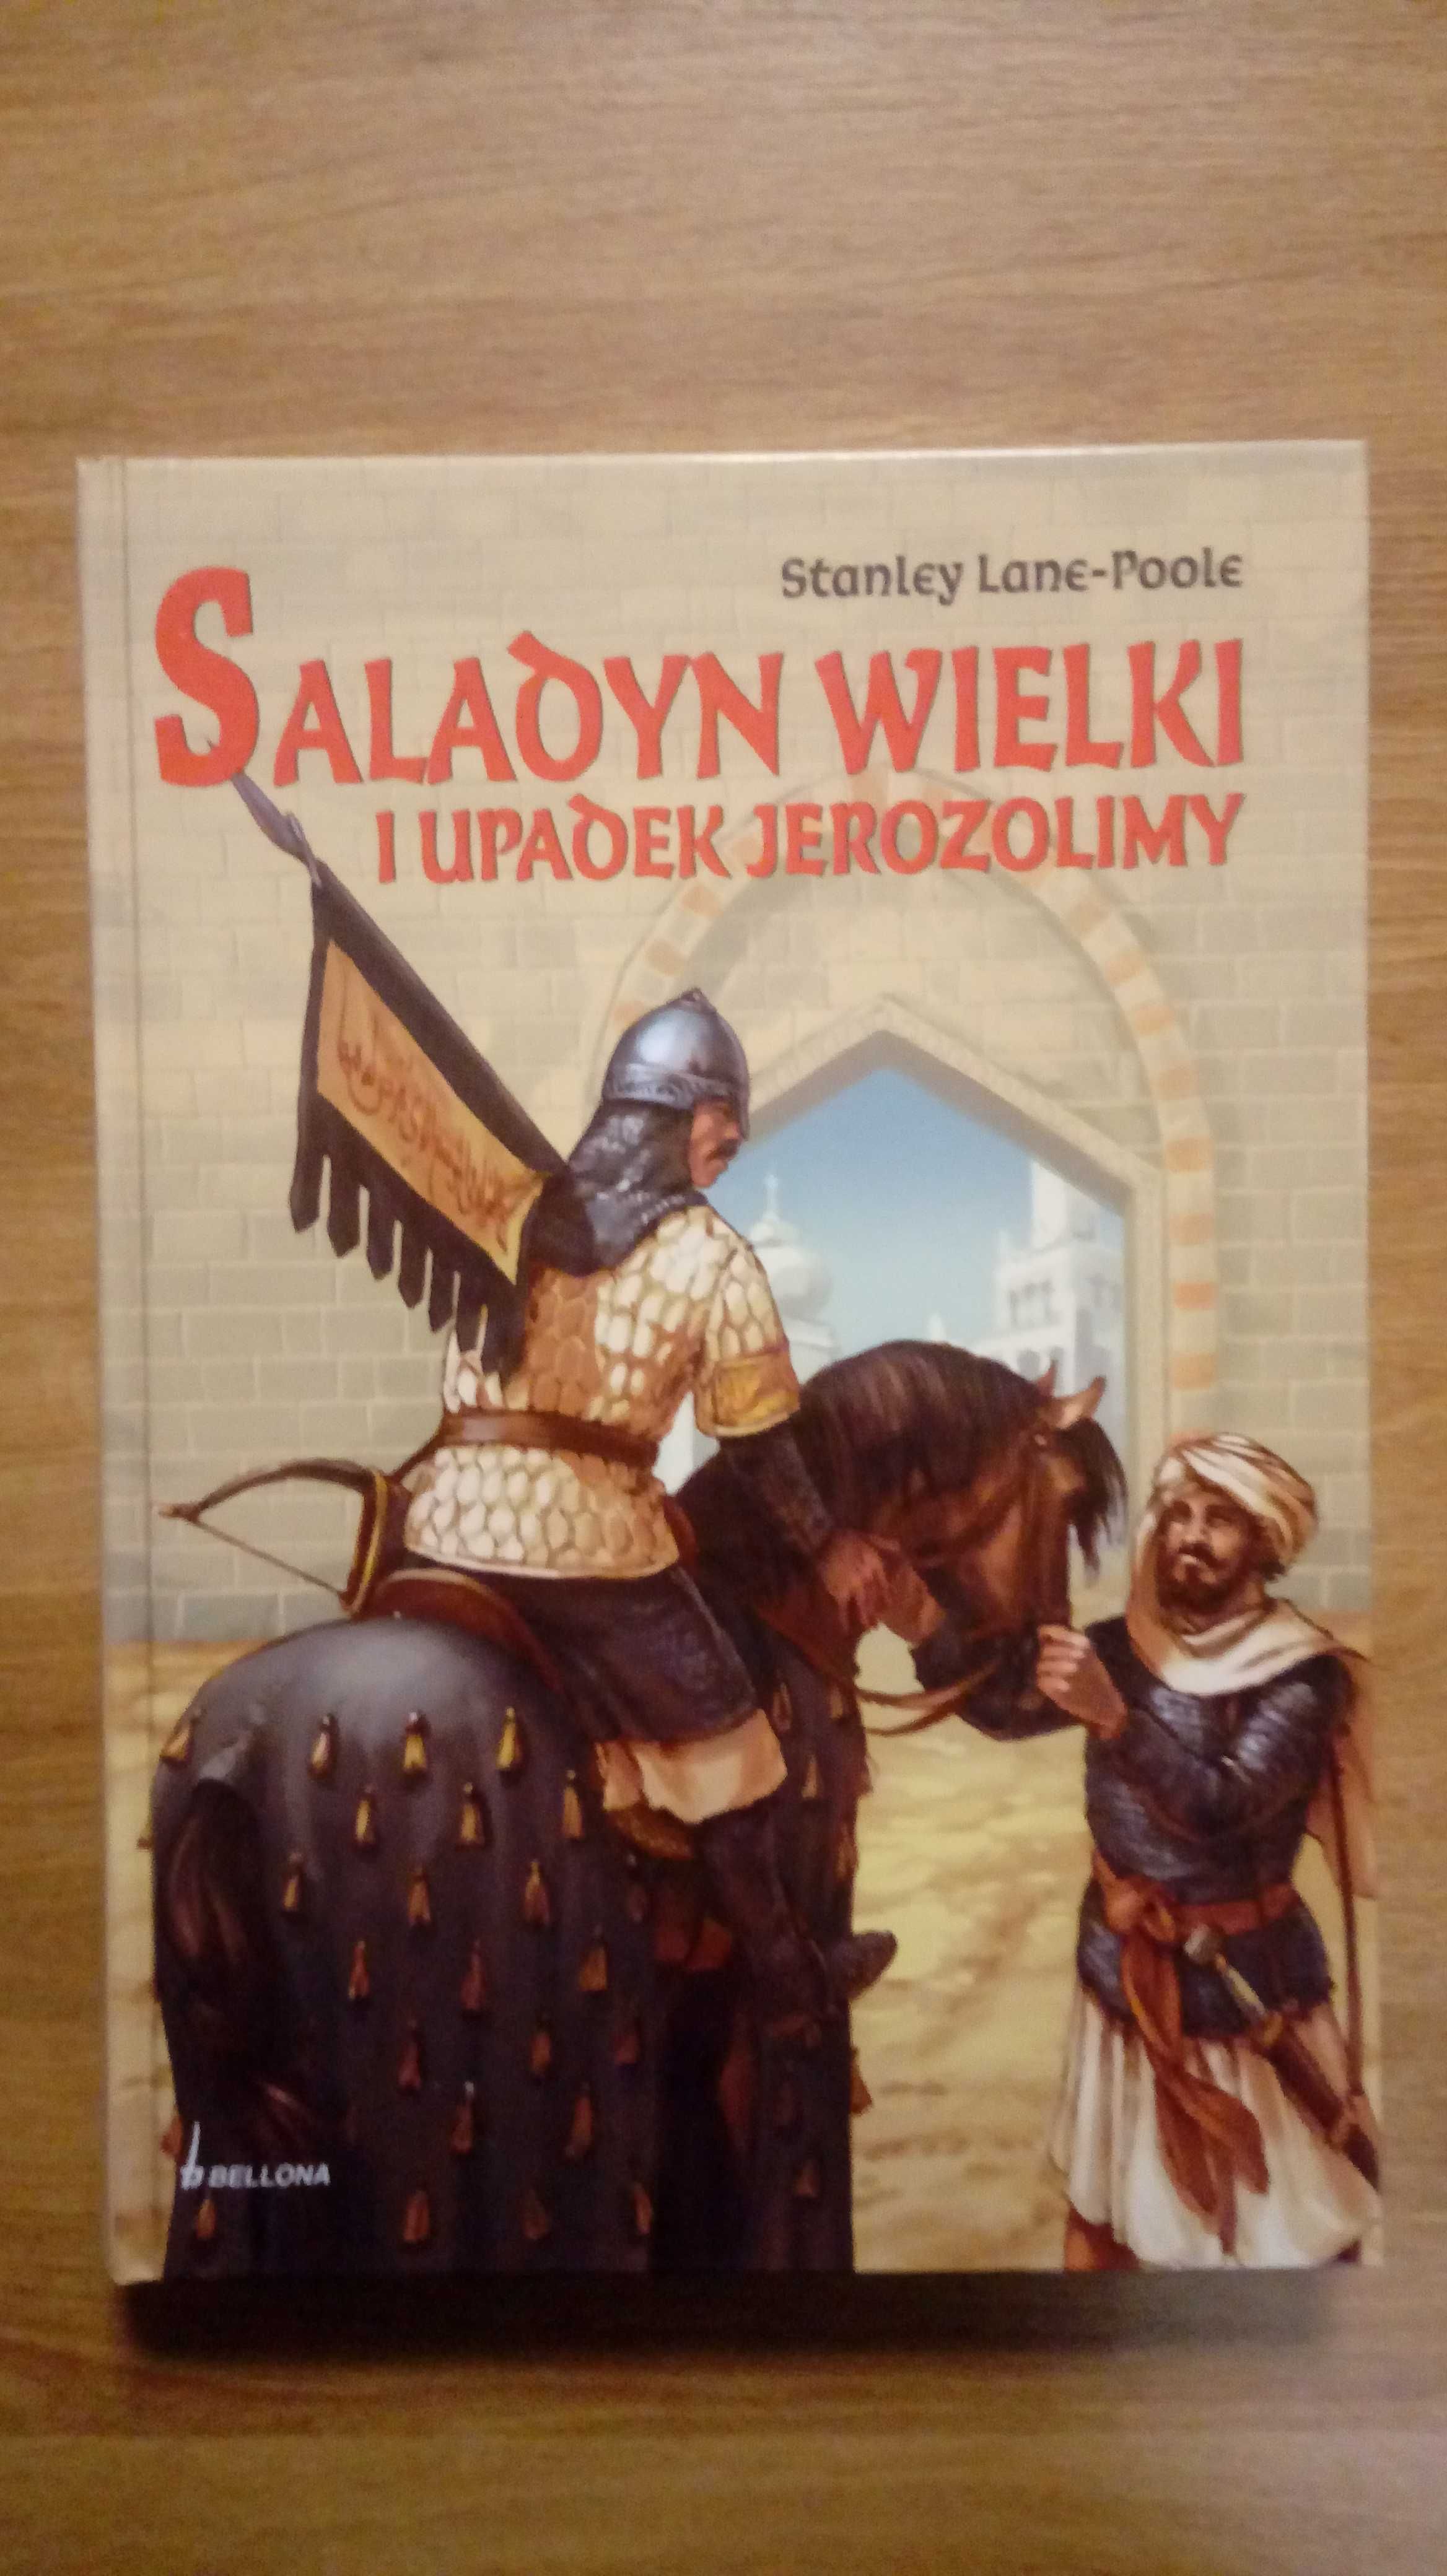 "Wyprawy krzyżowe i łaciński Wschód"; "Bizancjum i wyprawy krzyżowe" +